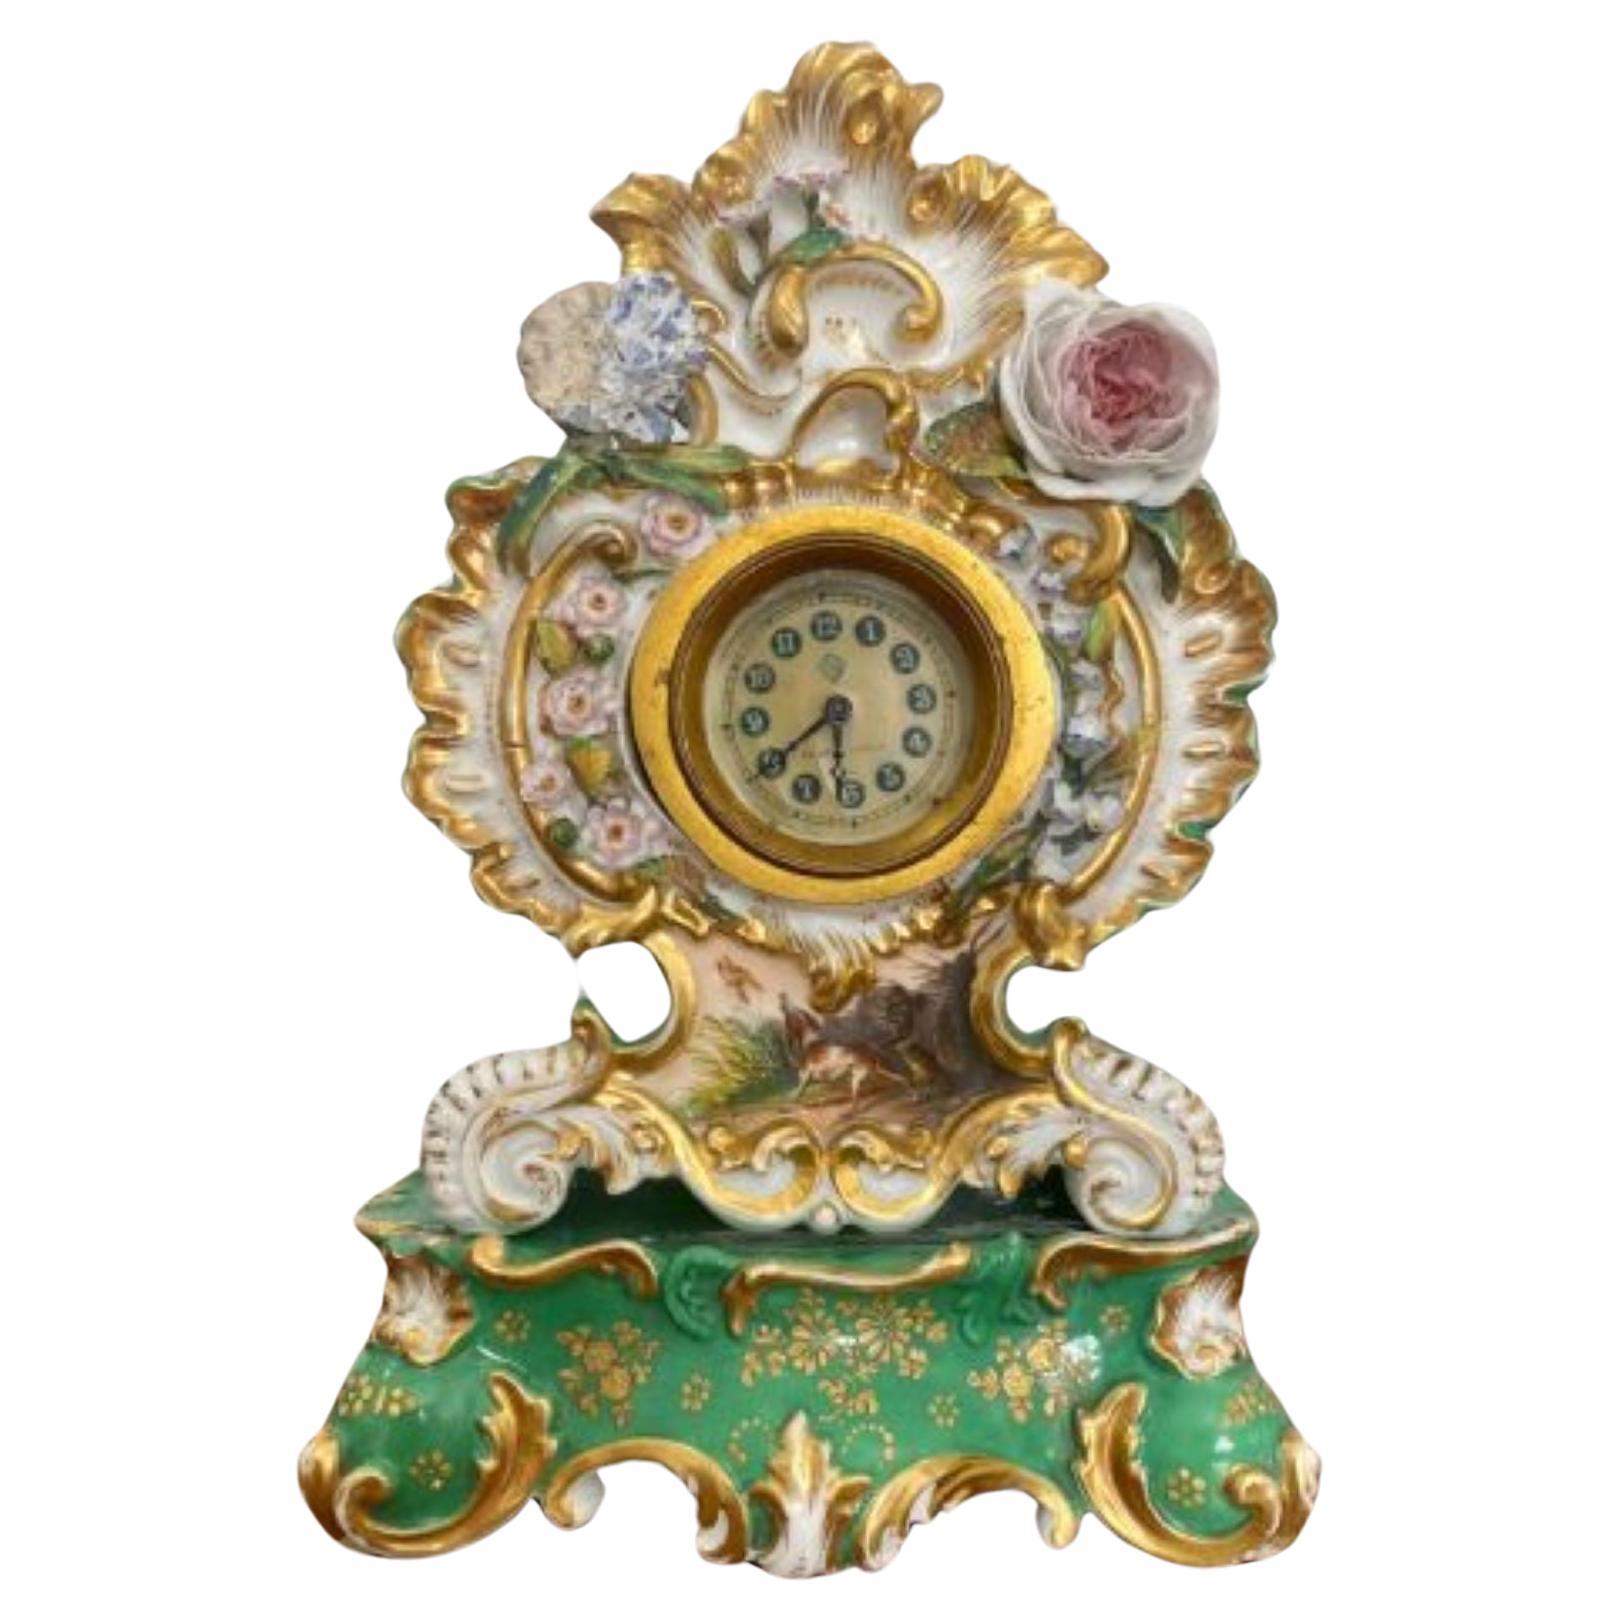 Antique Edwardian Quality Hand Painted Porcelain Mantle Clock